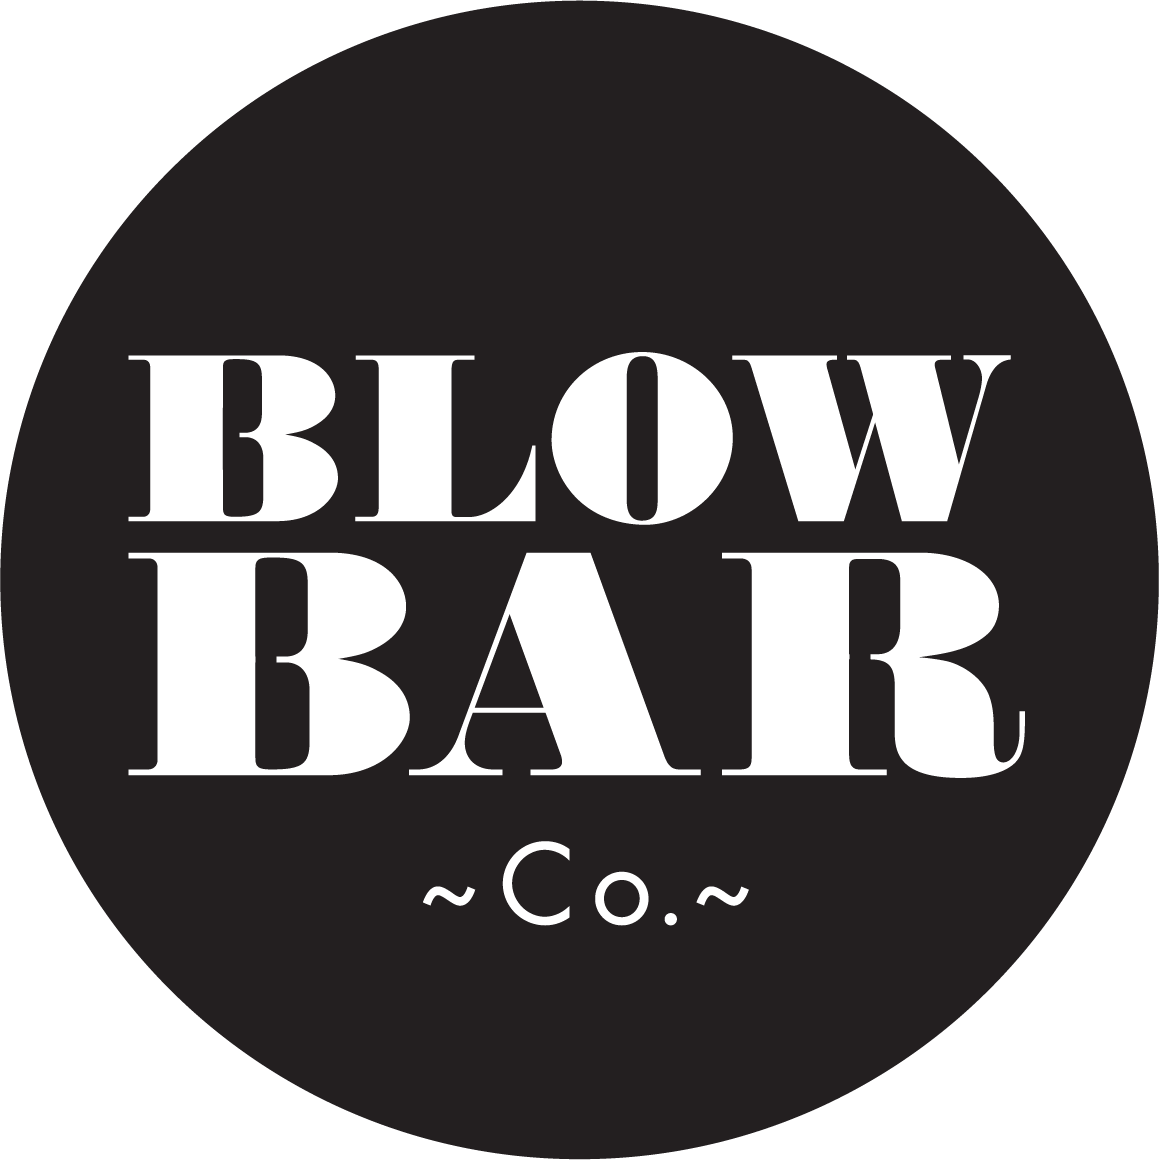 blowbarco logo